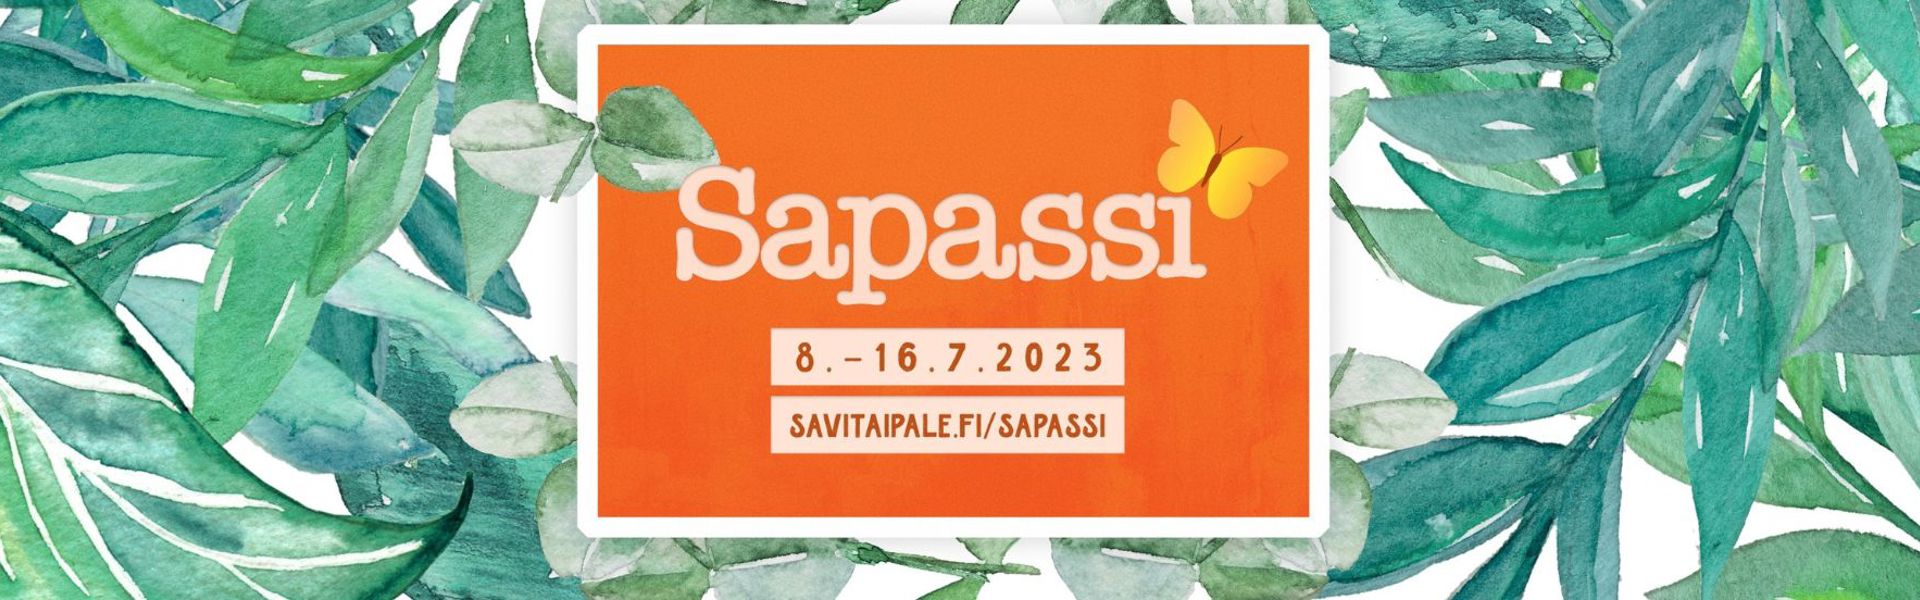 Sapassi-viikon logo päivämäärillä.